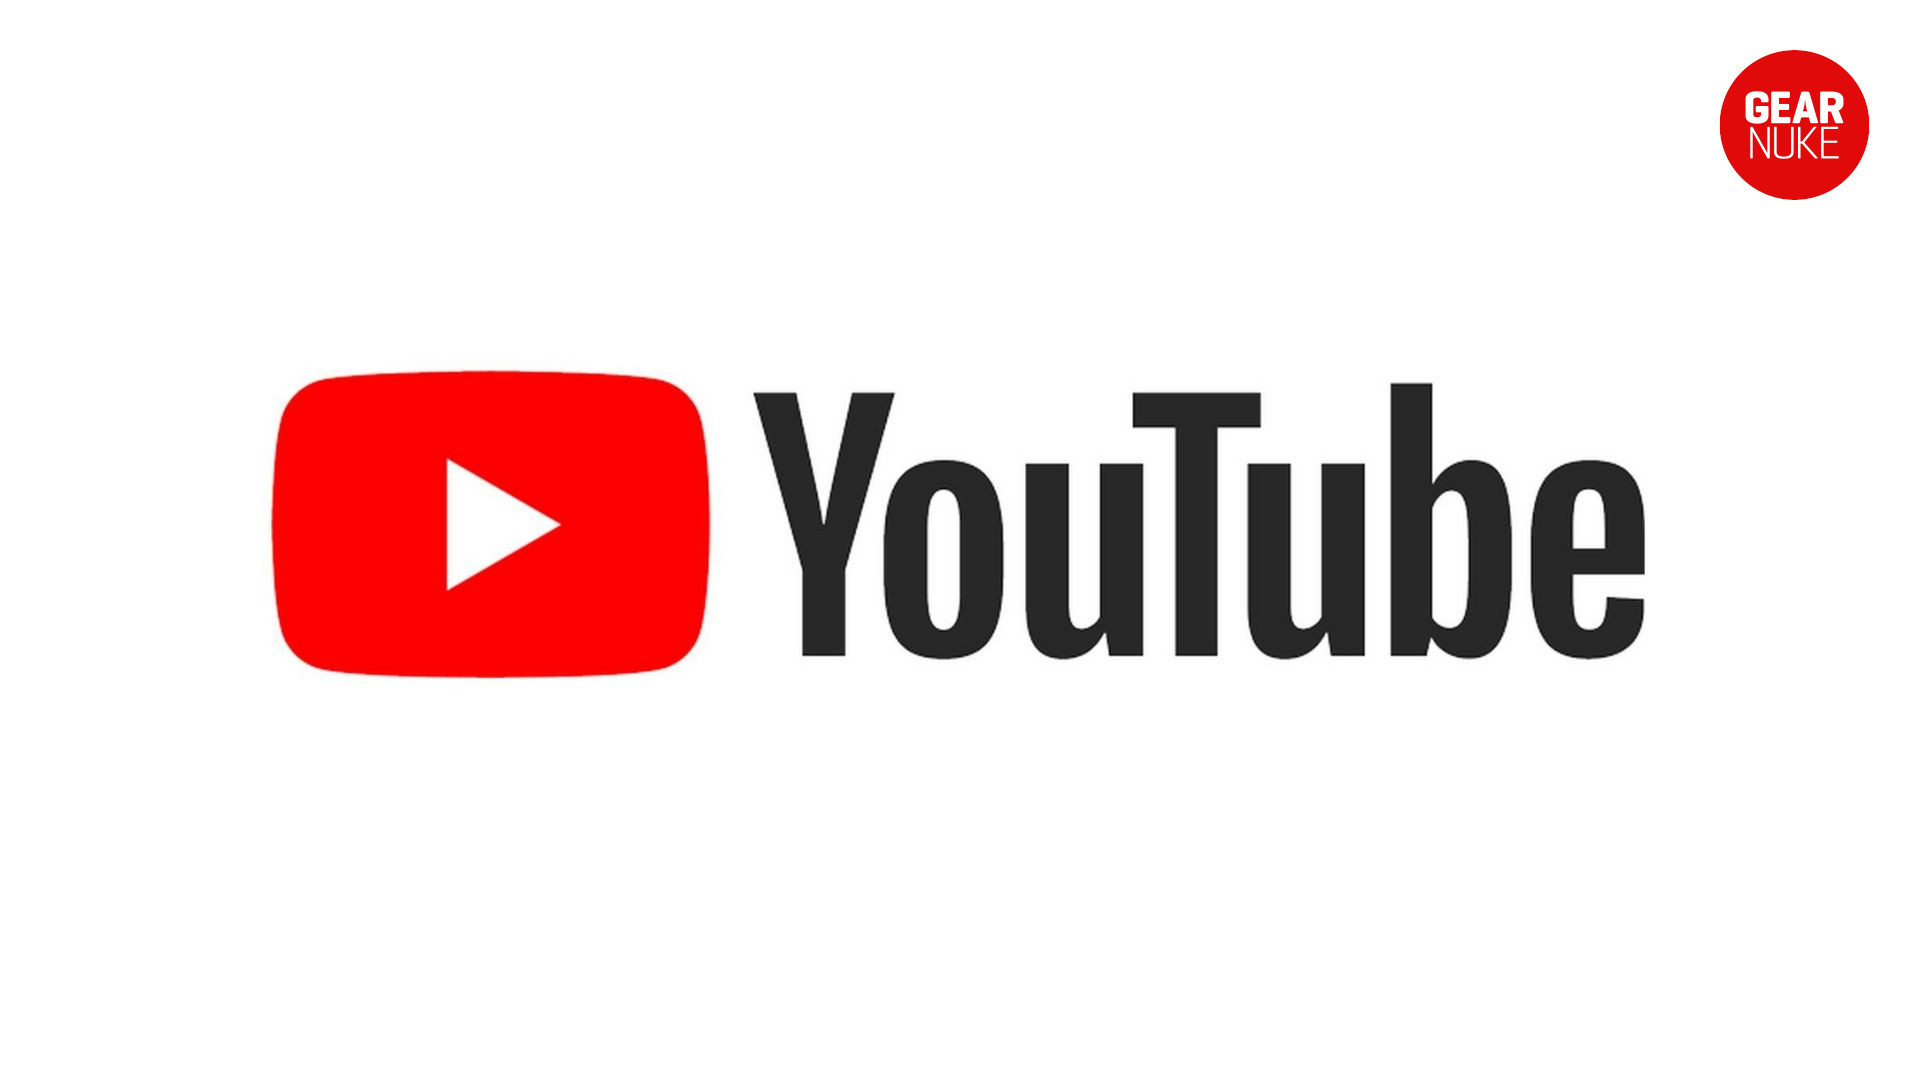 youtube basic logo image